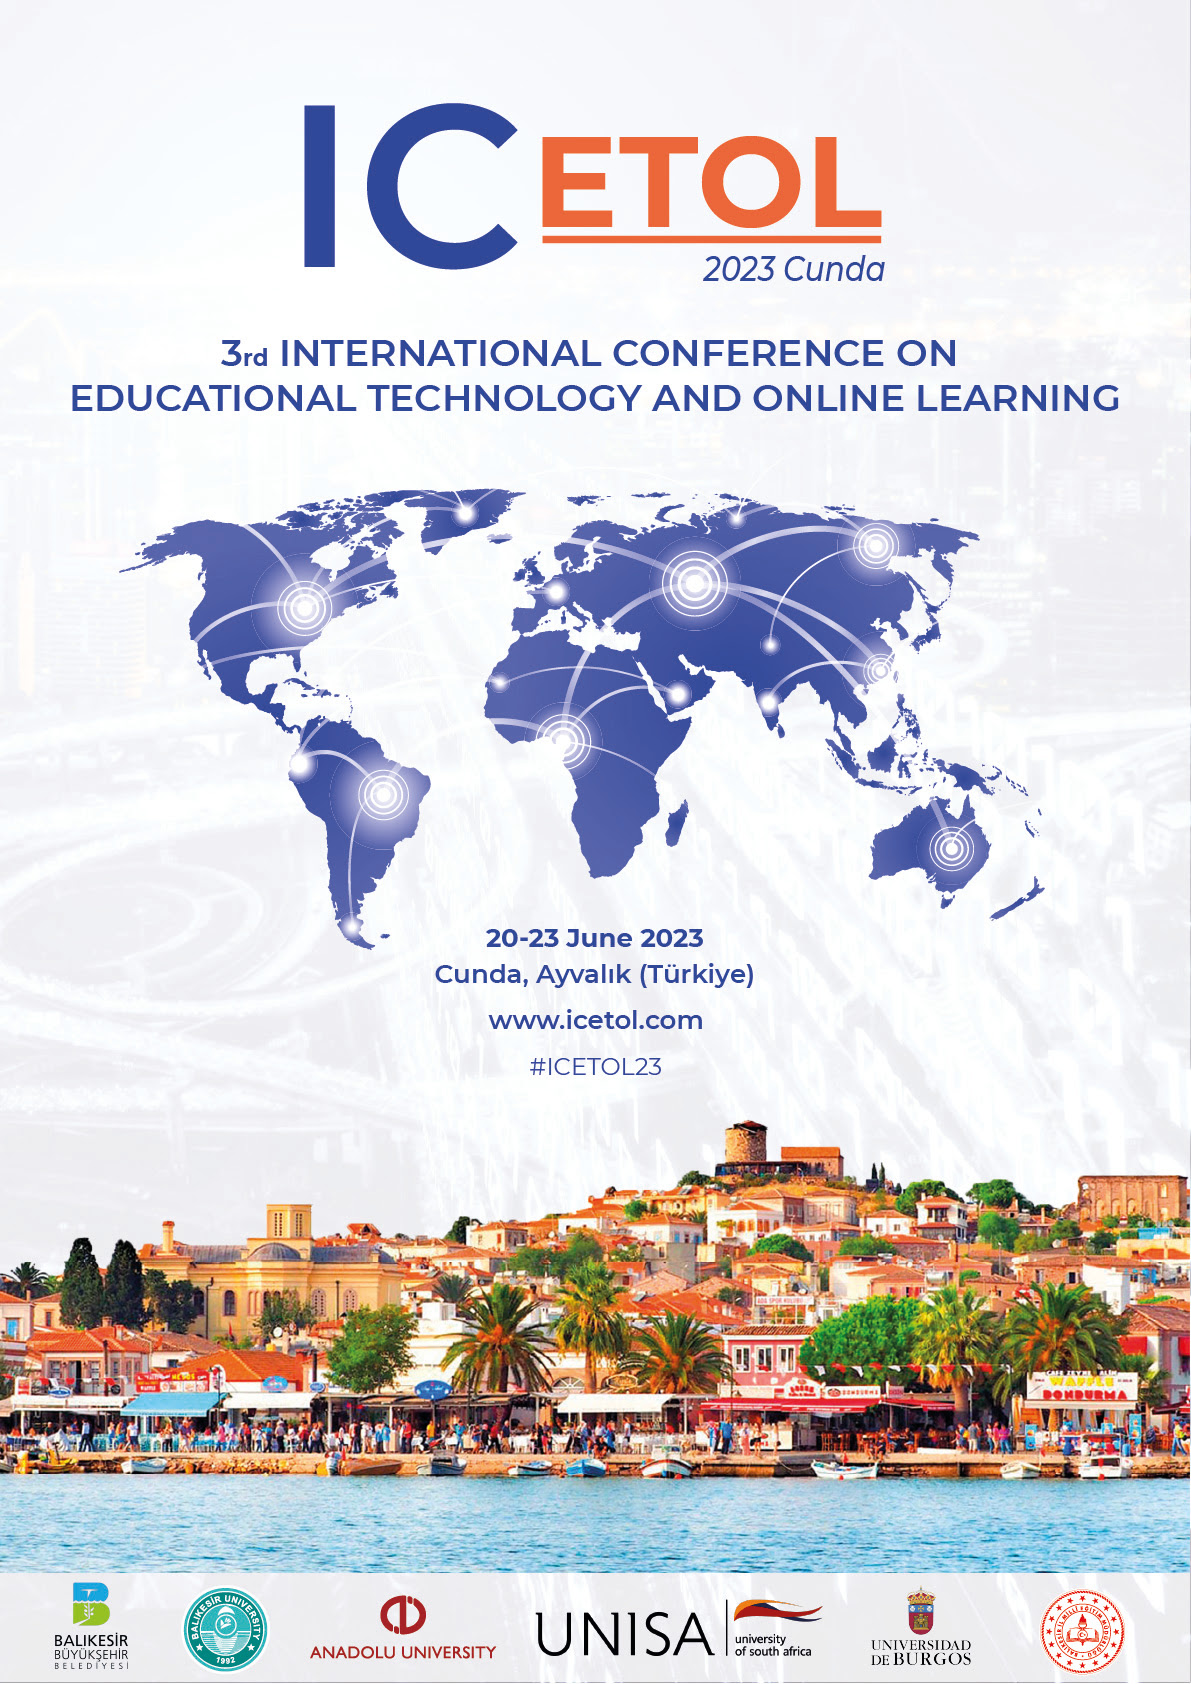 ICETOL: Oktatási technológia és online tanulás nemzetközi konferenciája